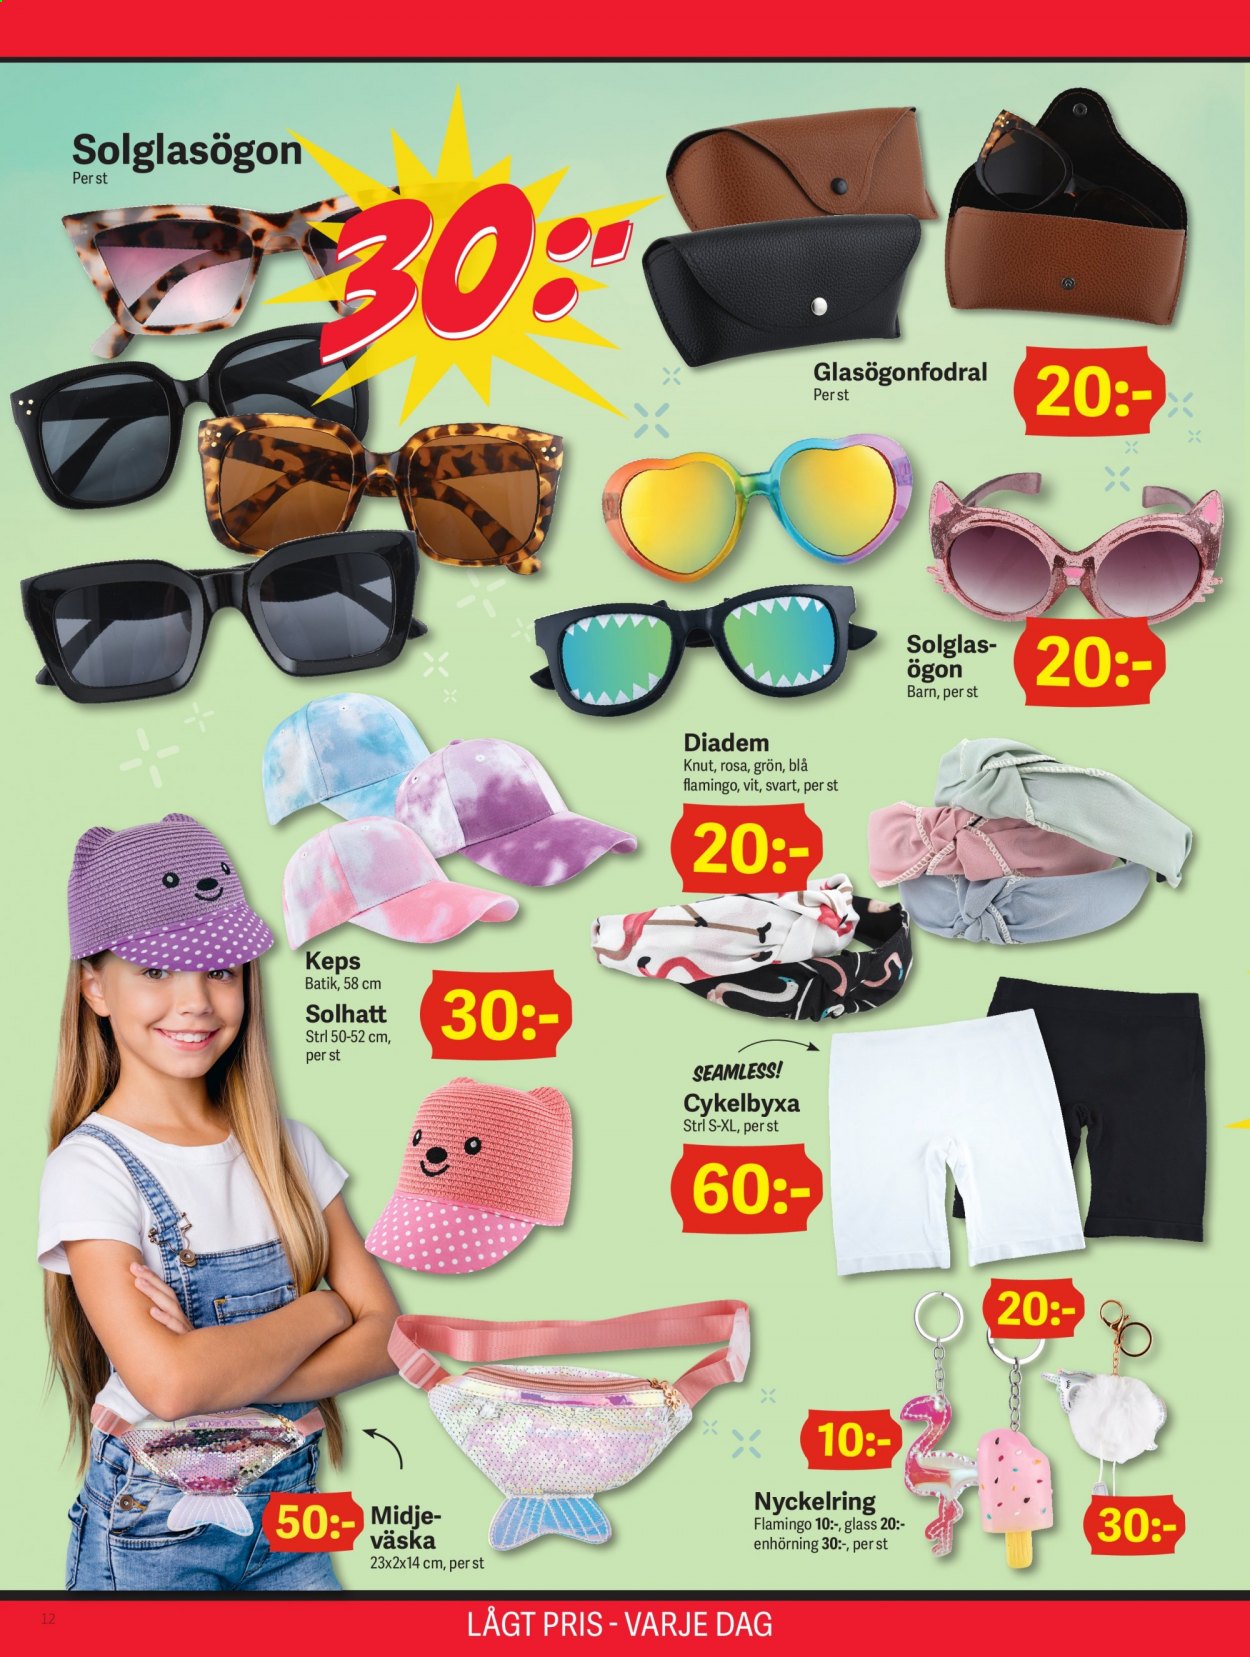 thumbnail - DollarStore reklamblad - varor från reklamblad - keps, väska, enhörning, flamingo. Sida 12.